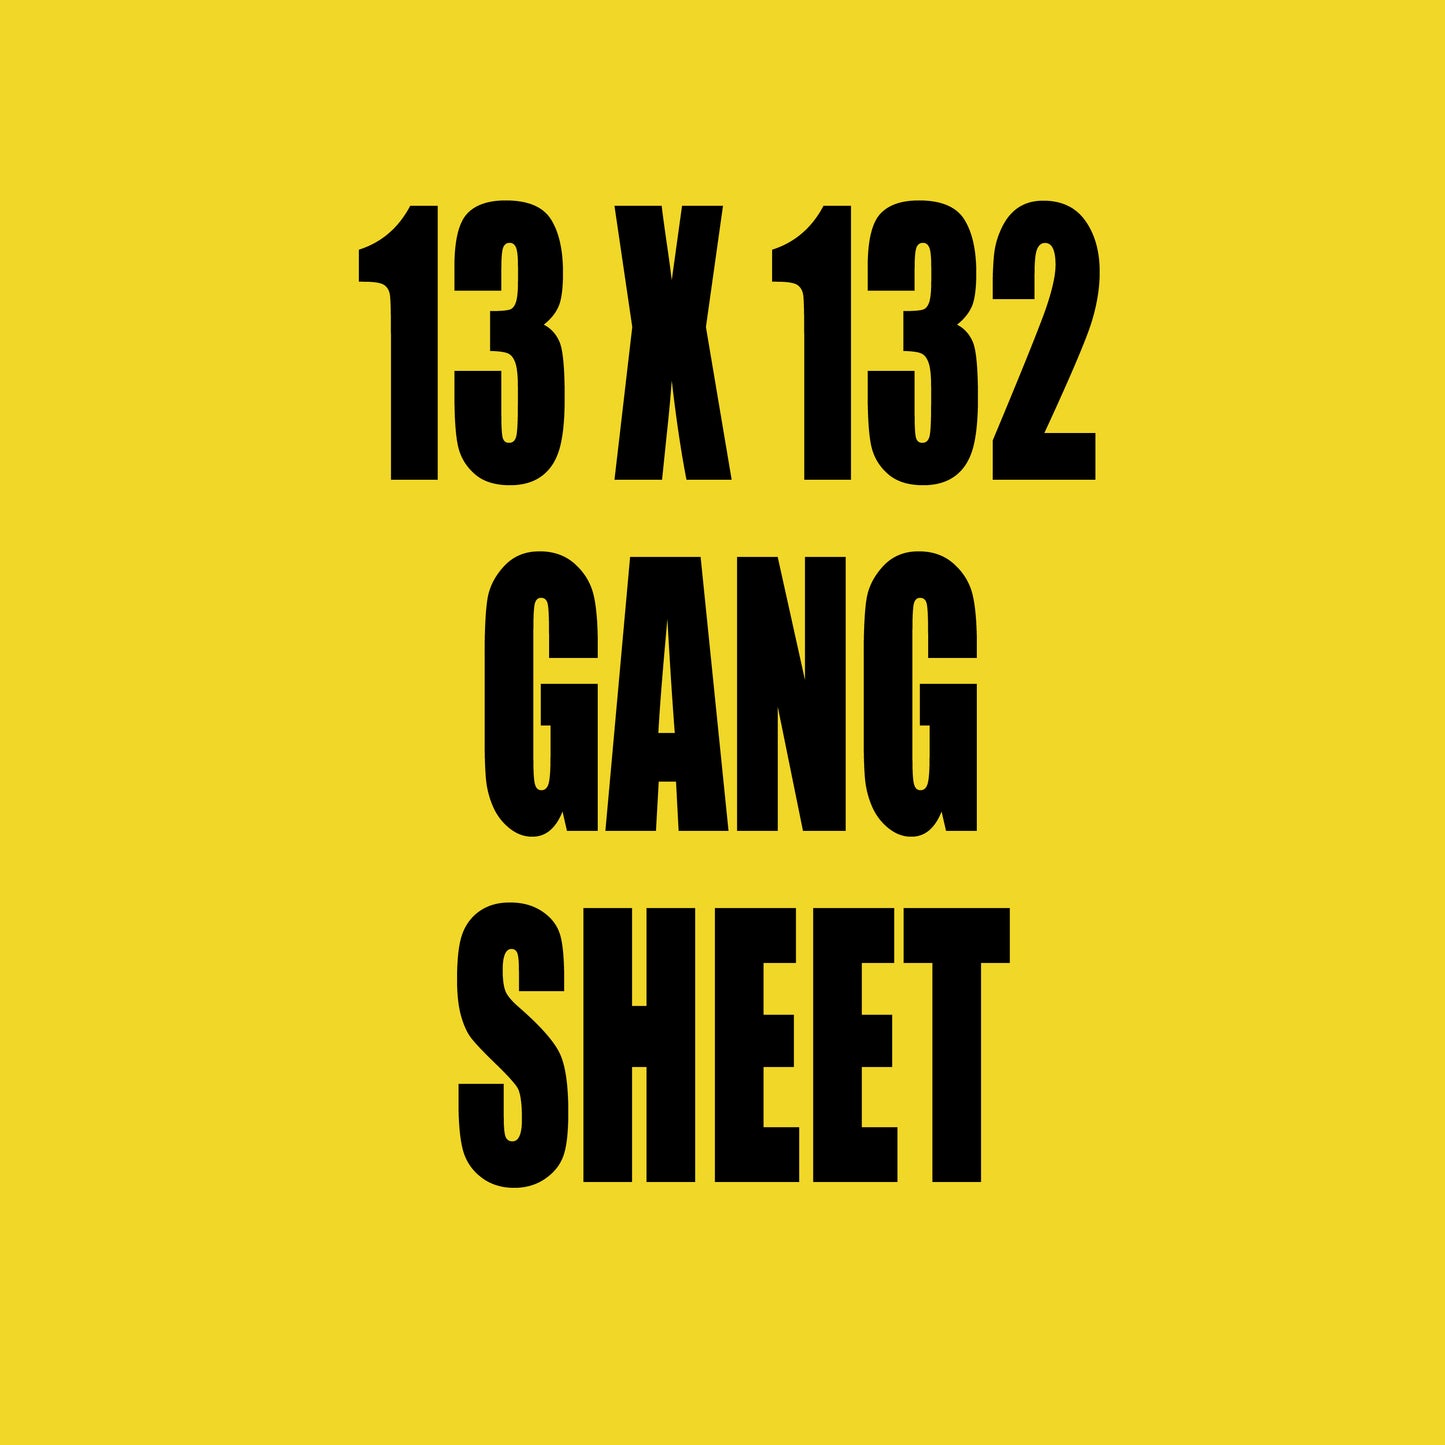 13x132 Gang Sheet